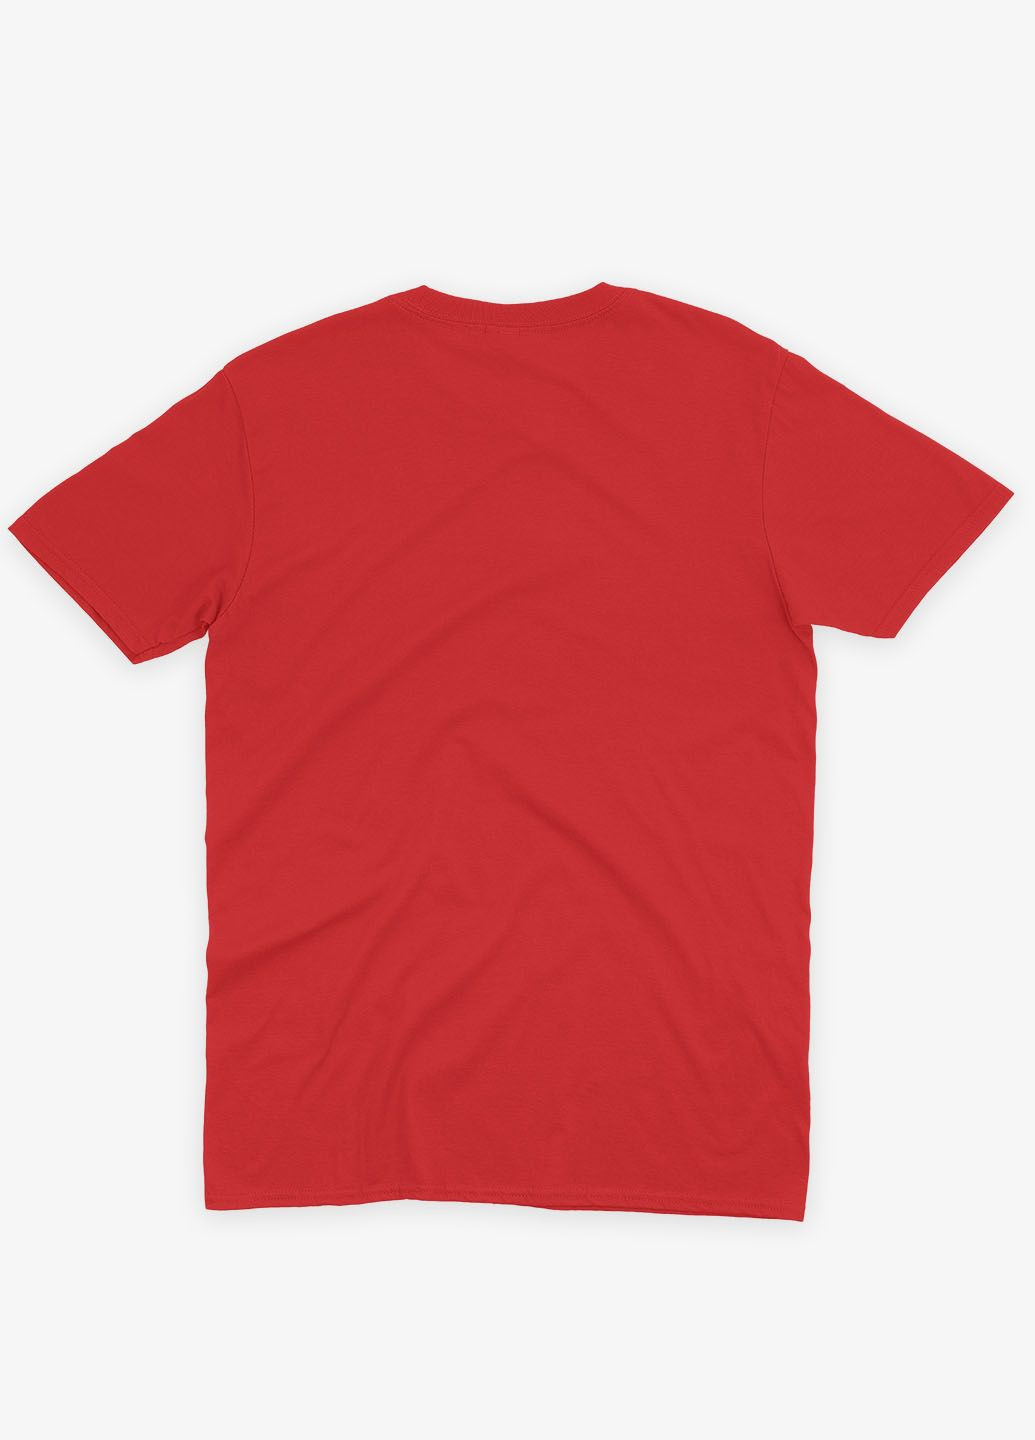 Красная демисезонная футболка для мальчика с принтом супергероя - человек-паук (ts001-1-sre-006-014-018-b) Modno